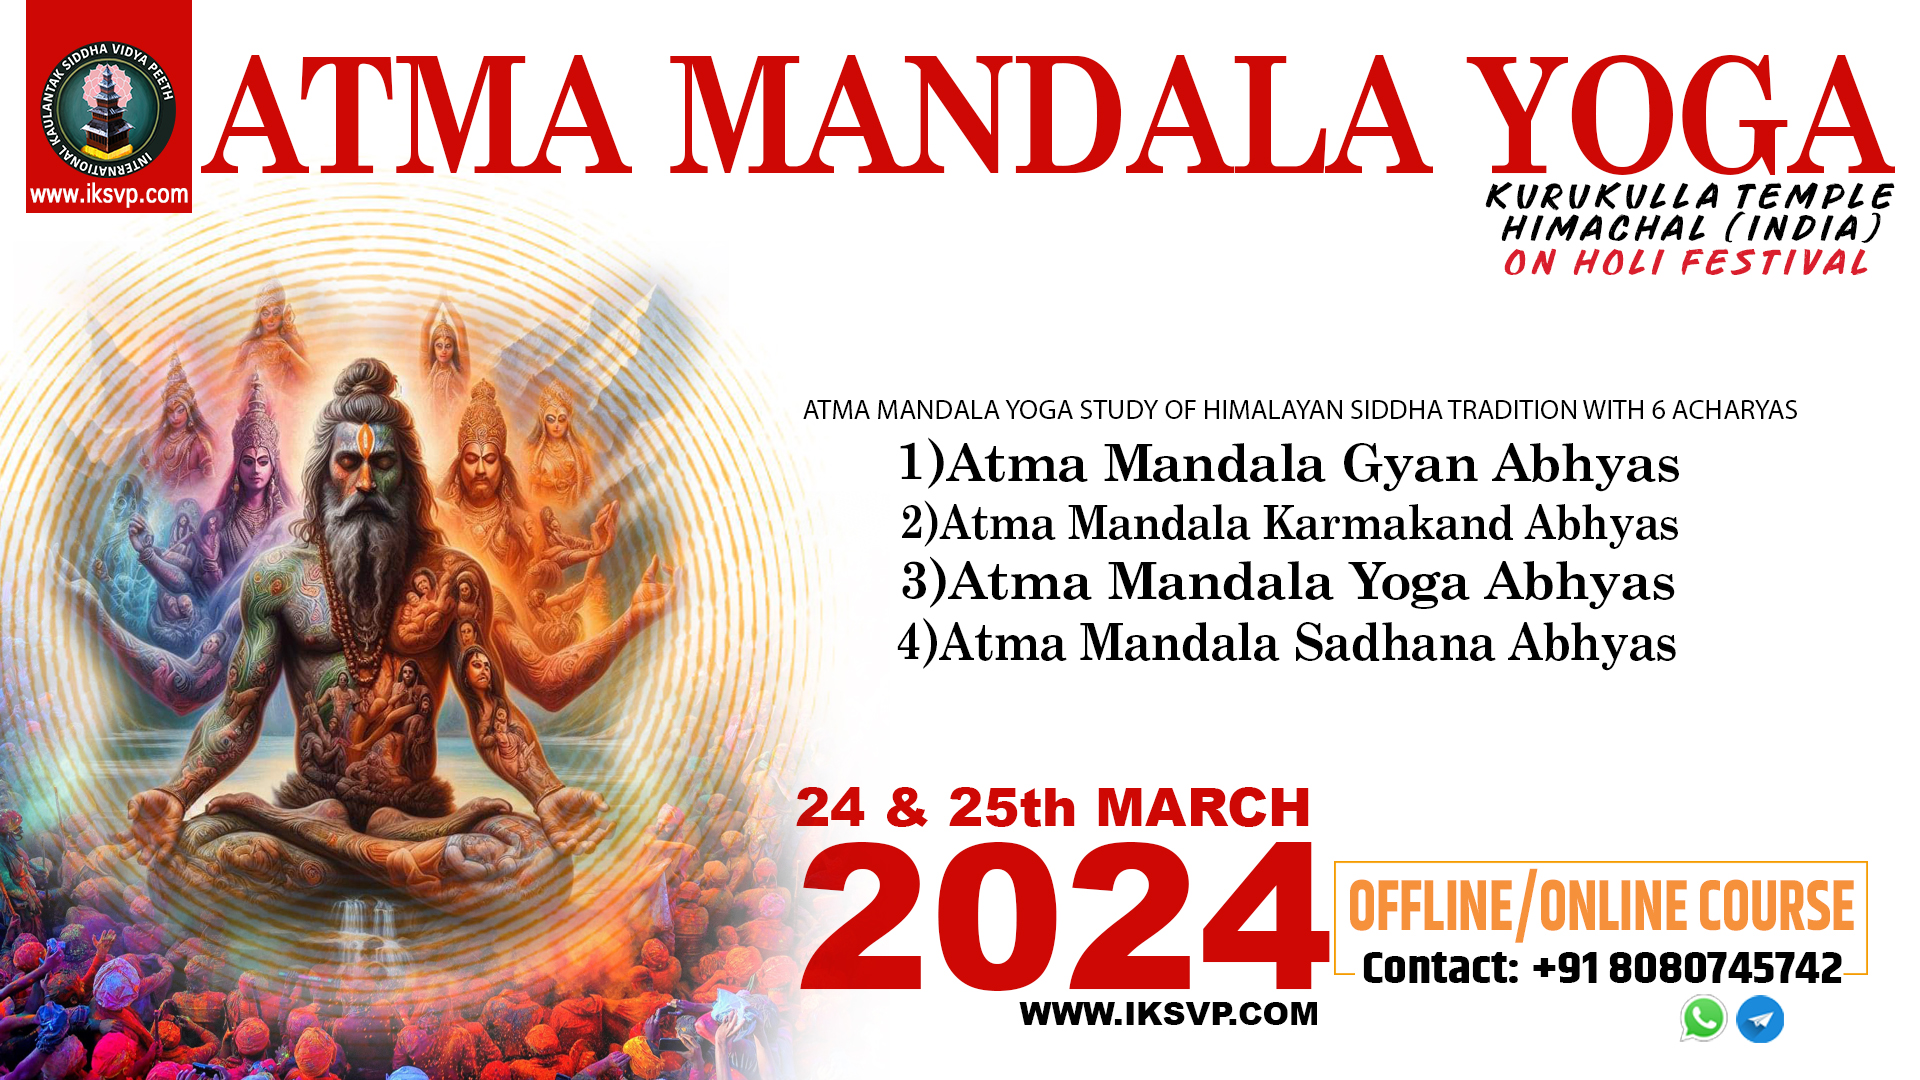 Atma Mandala Yoga Sadhana